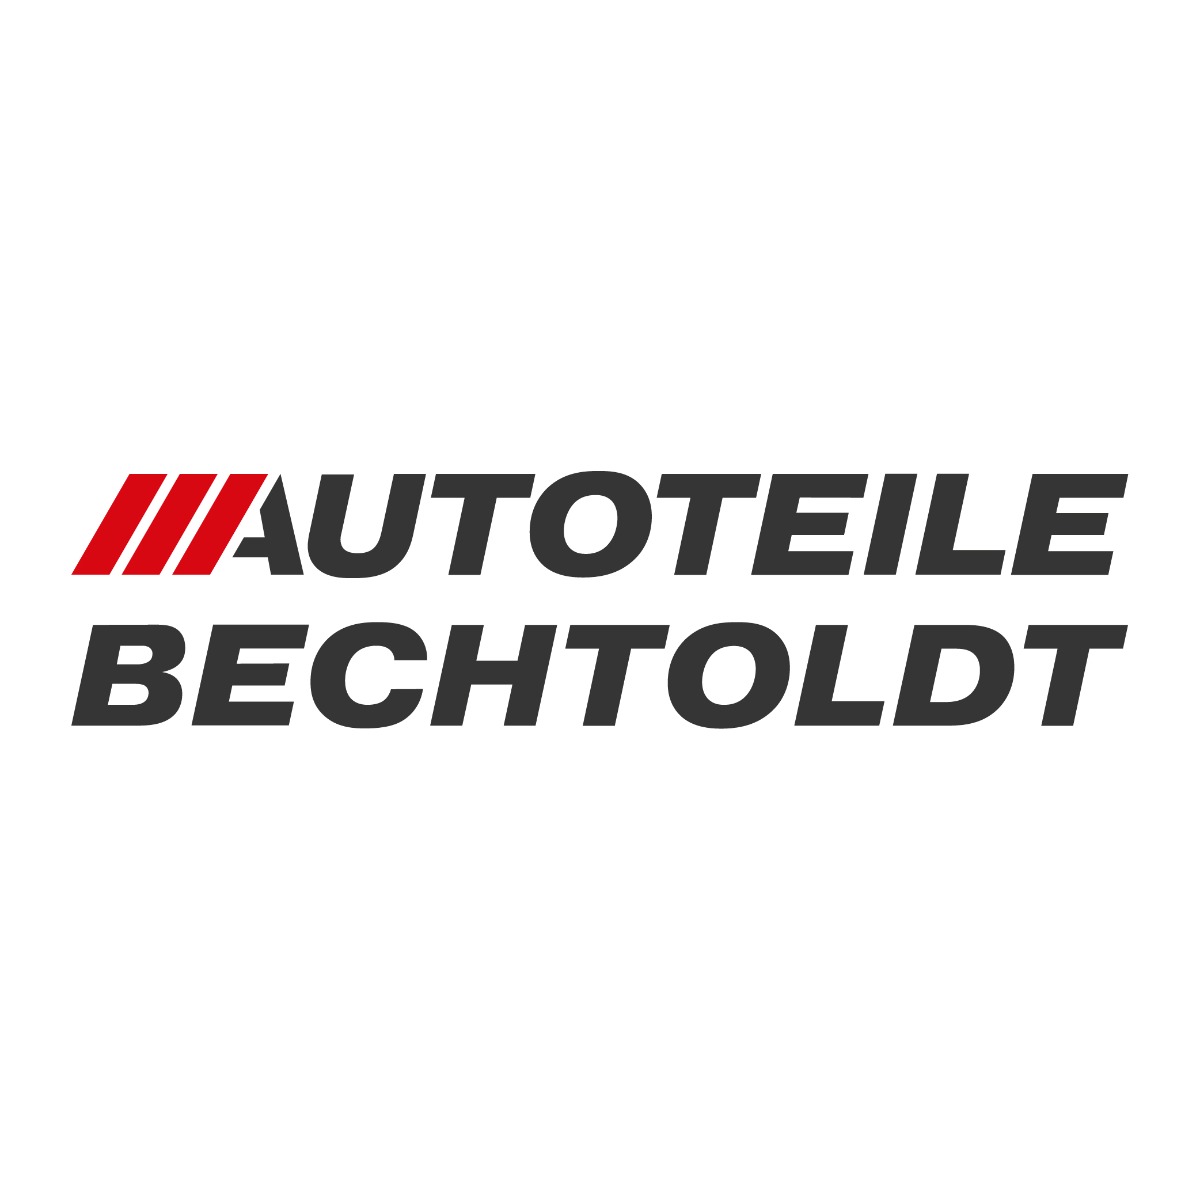 Autoteile Bechtoldt GmbH